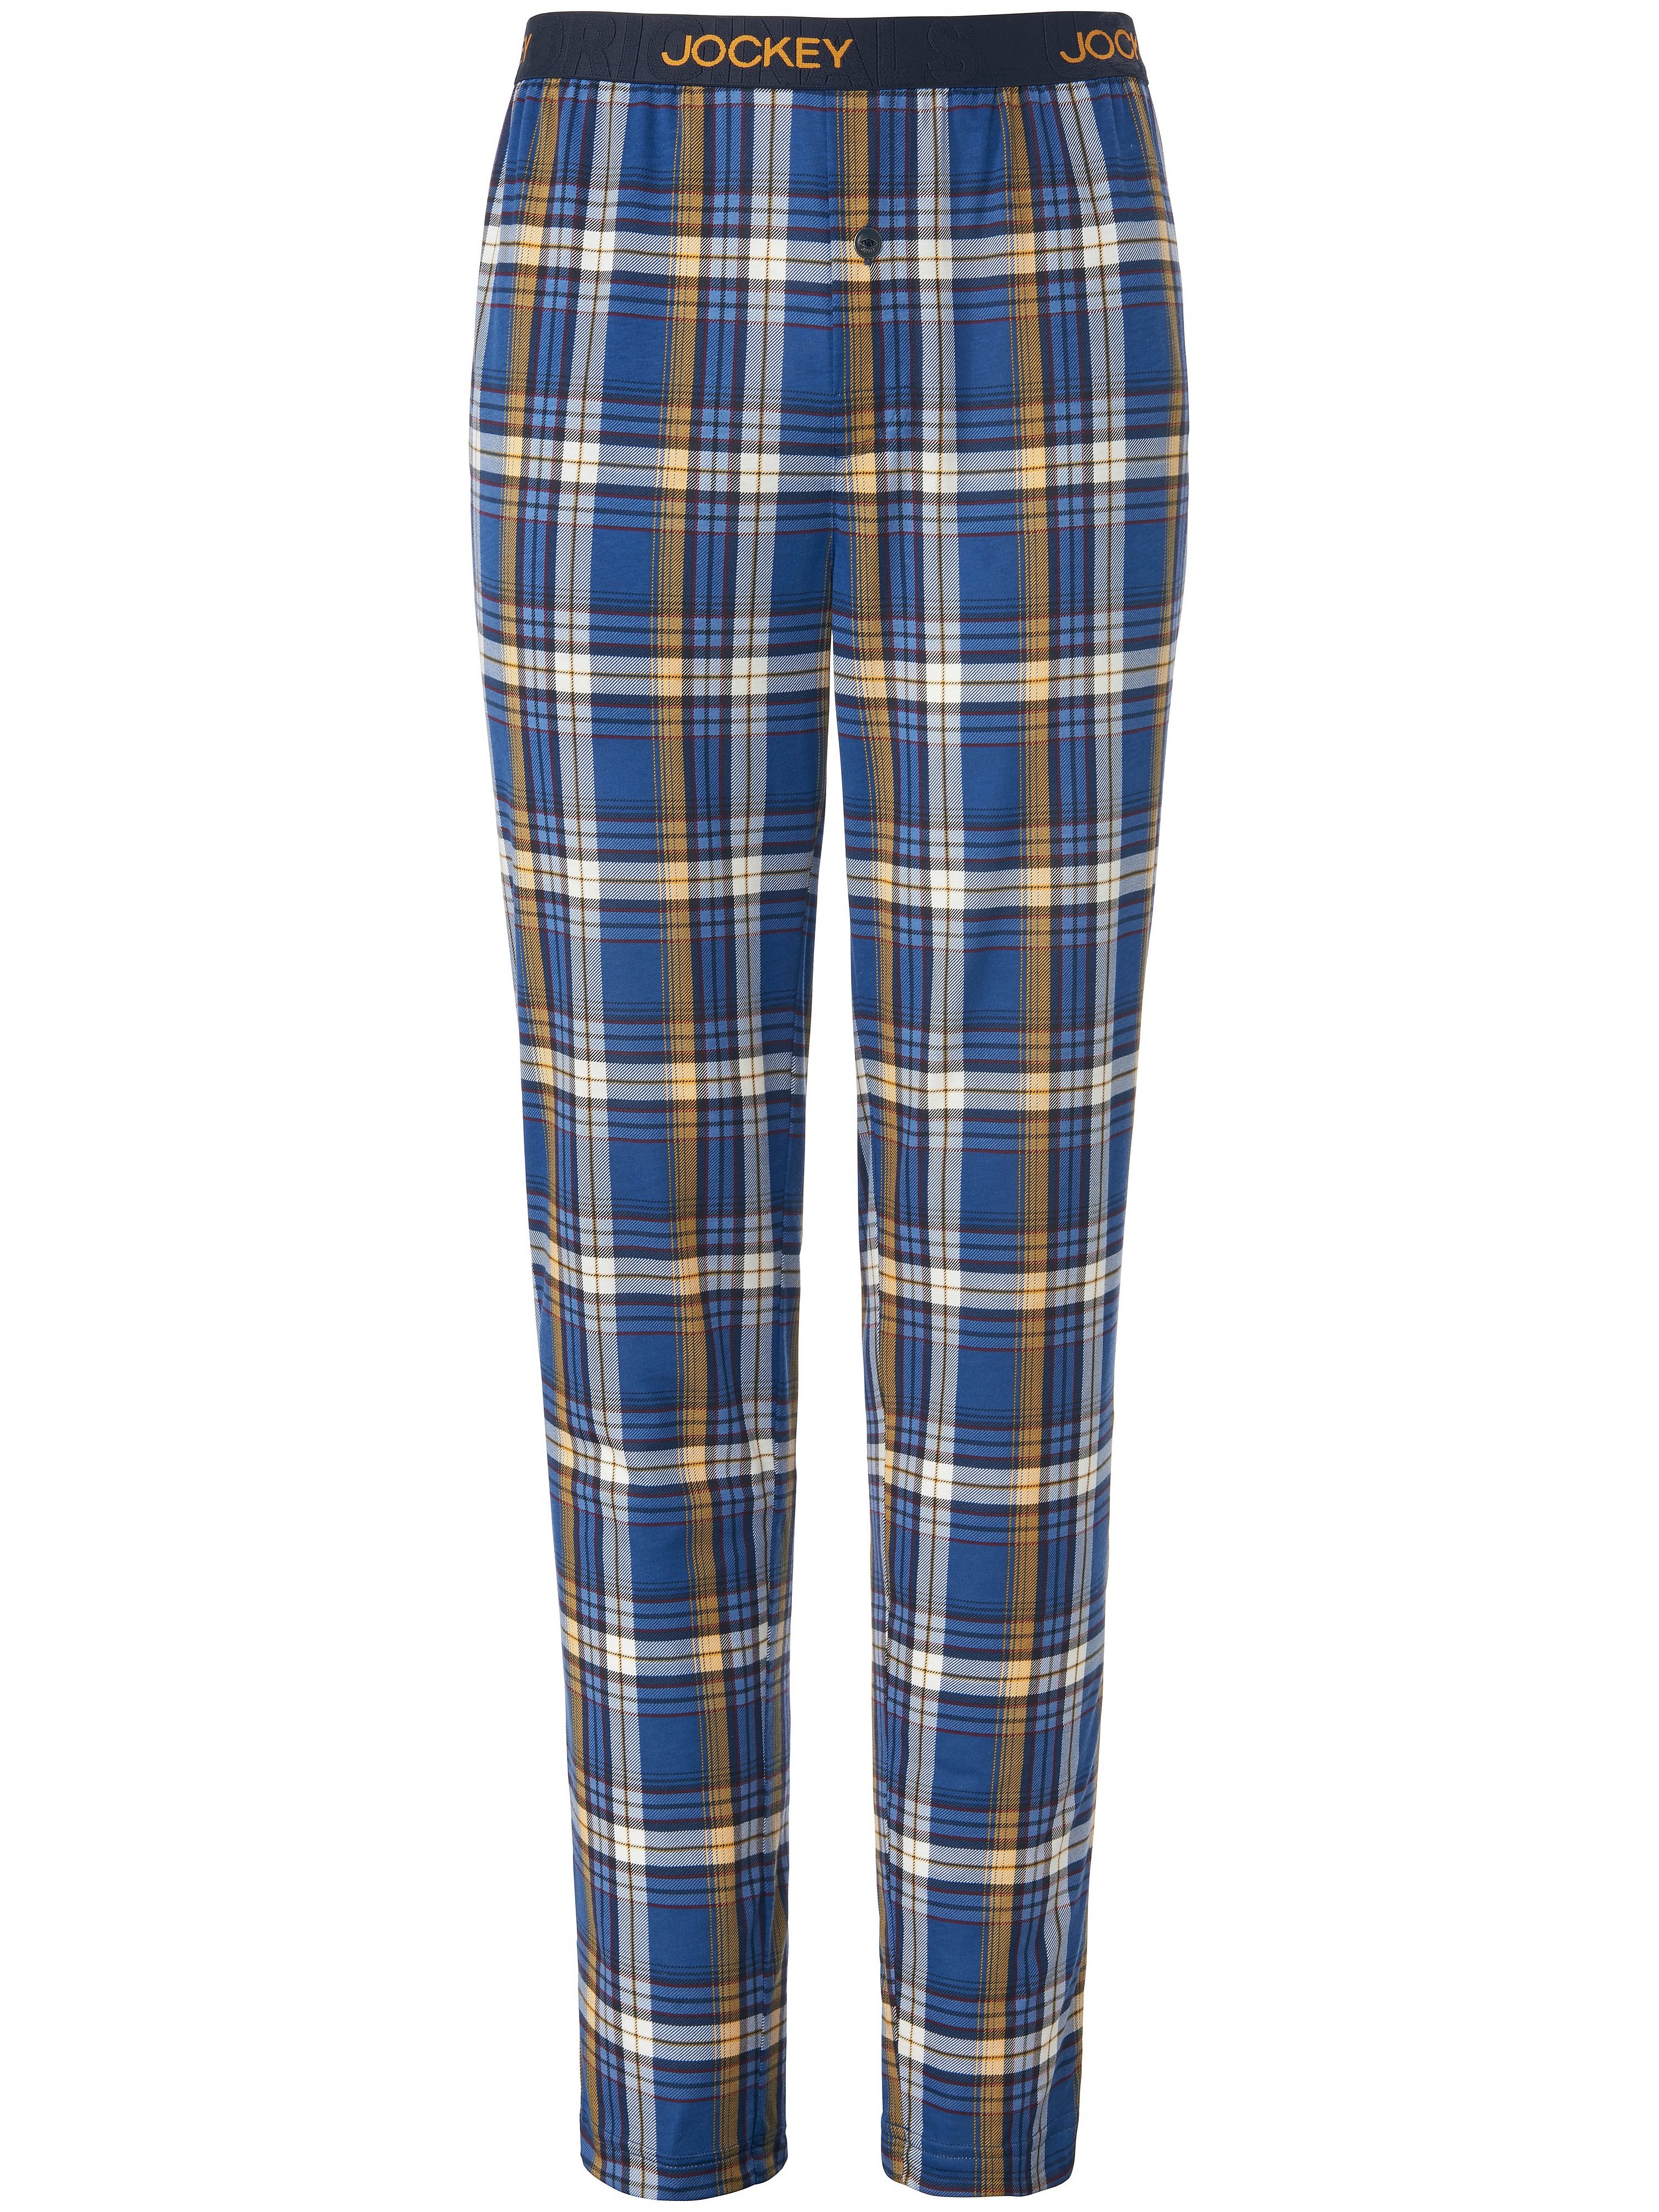 Le pantalon pyjama en single jersey  Jockey bleu